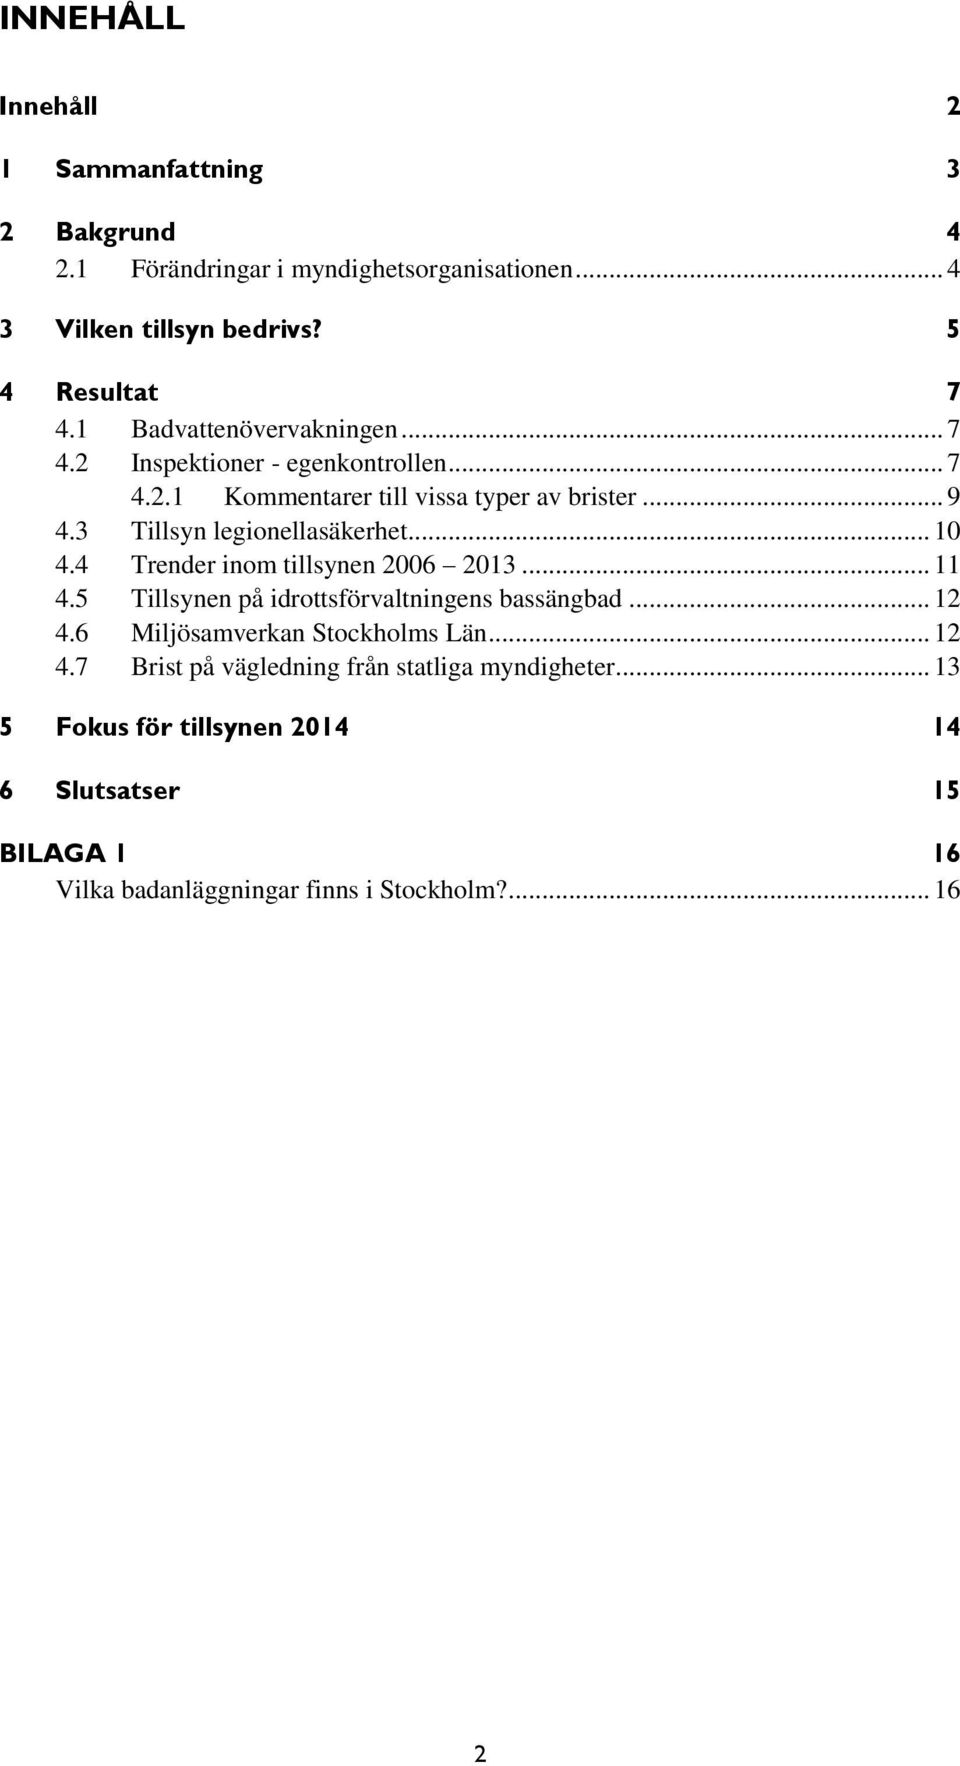 .. 10 4.4 Trender inom tillsynen 2006 2013... 11 4.5 Tillsynen på idrottsförvaltningens bassängbad... 12 4.